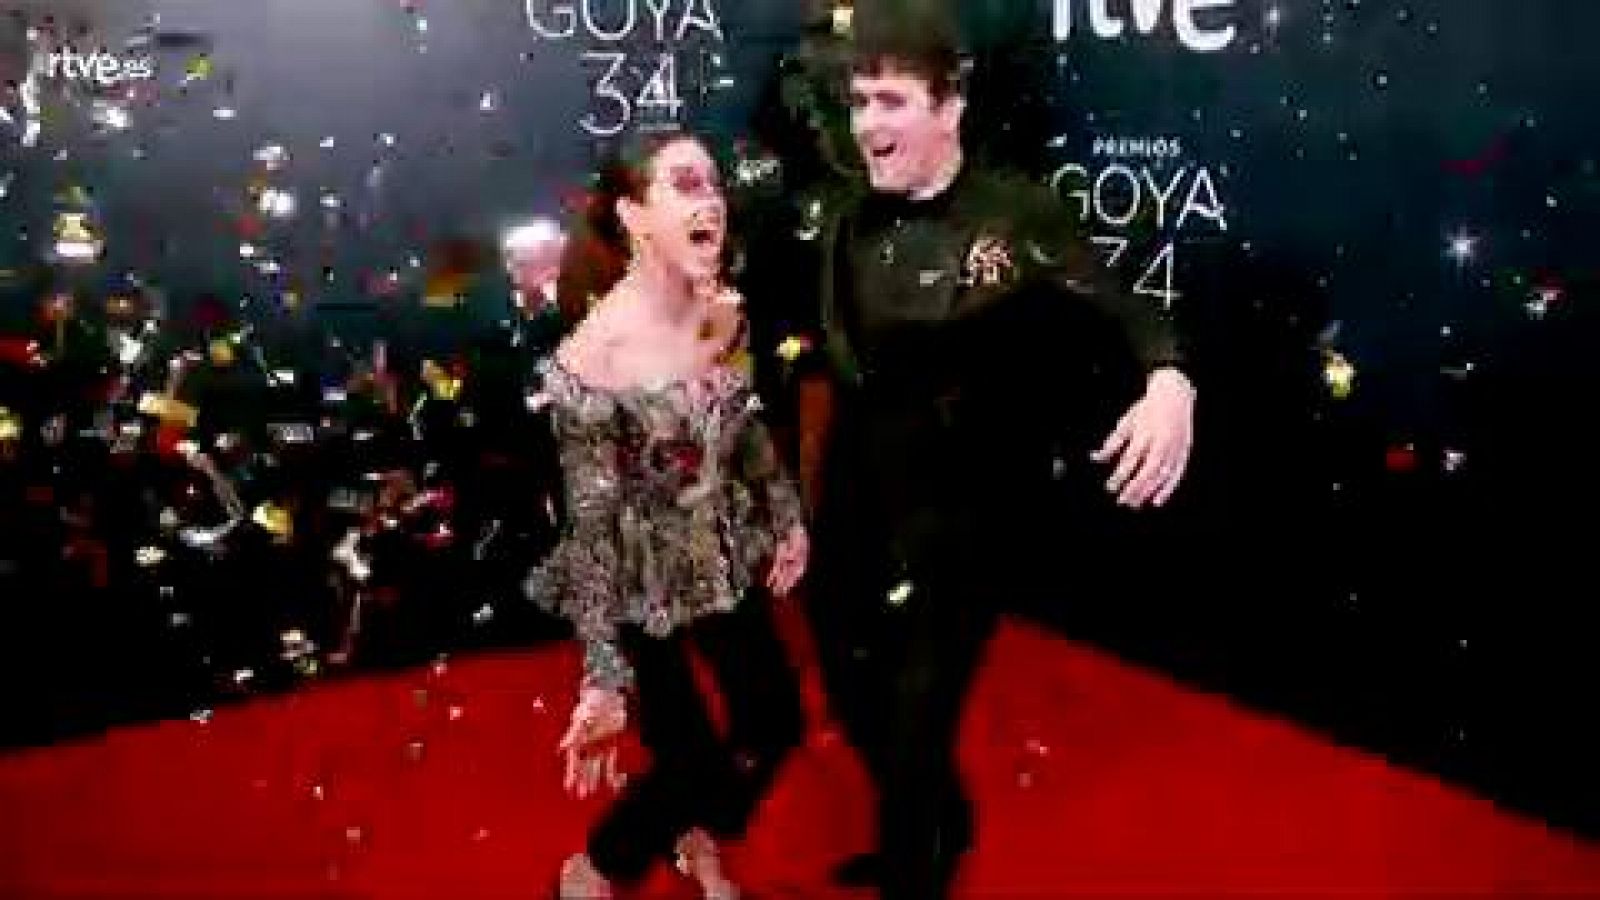 Premios Goya ¿ Raquel Sánchez Silva y Palomo Spain se besan para la cámara glamur de los Goya